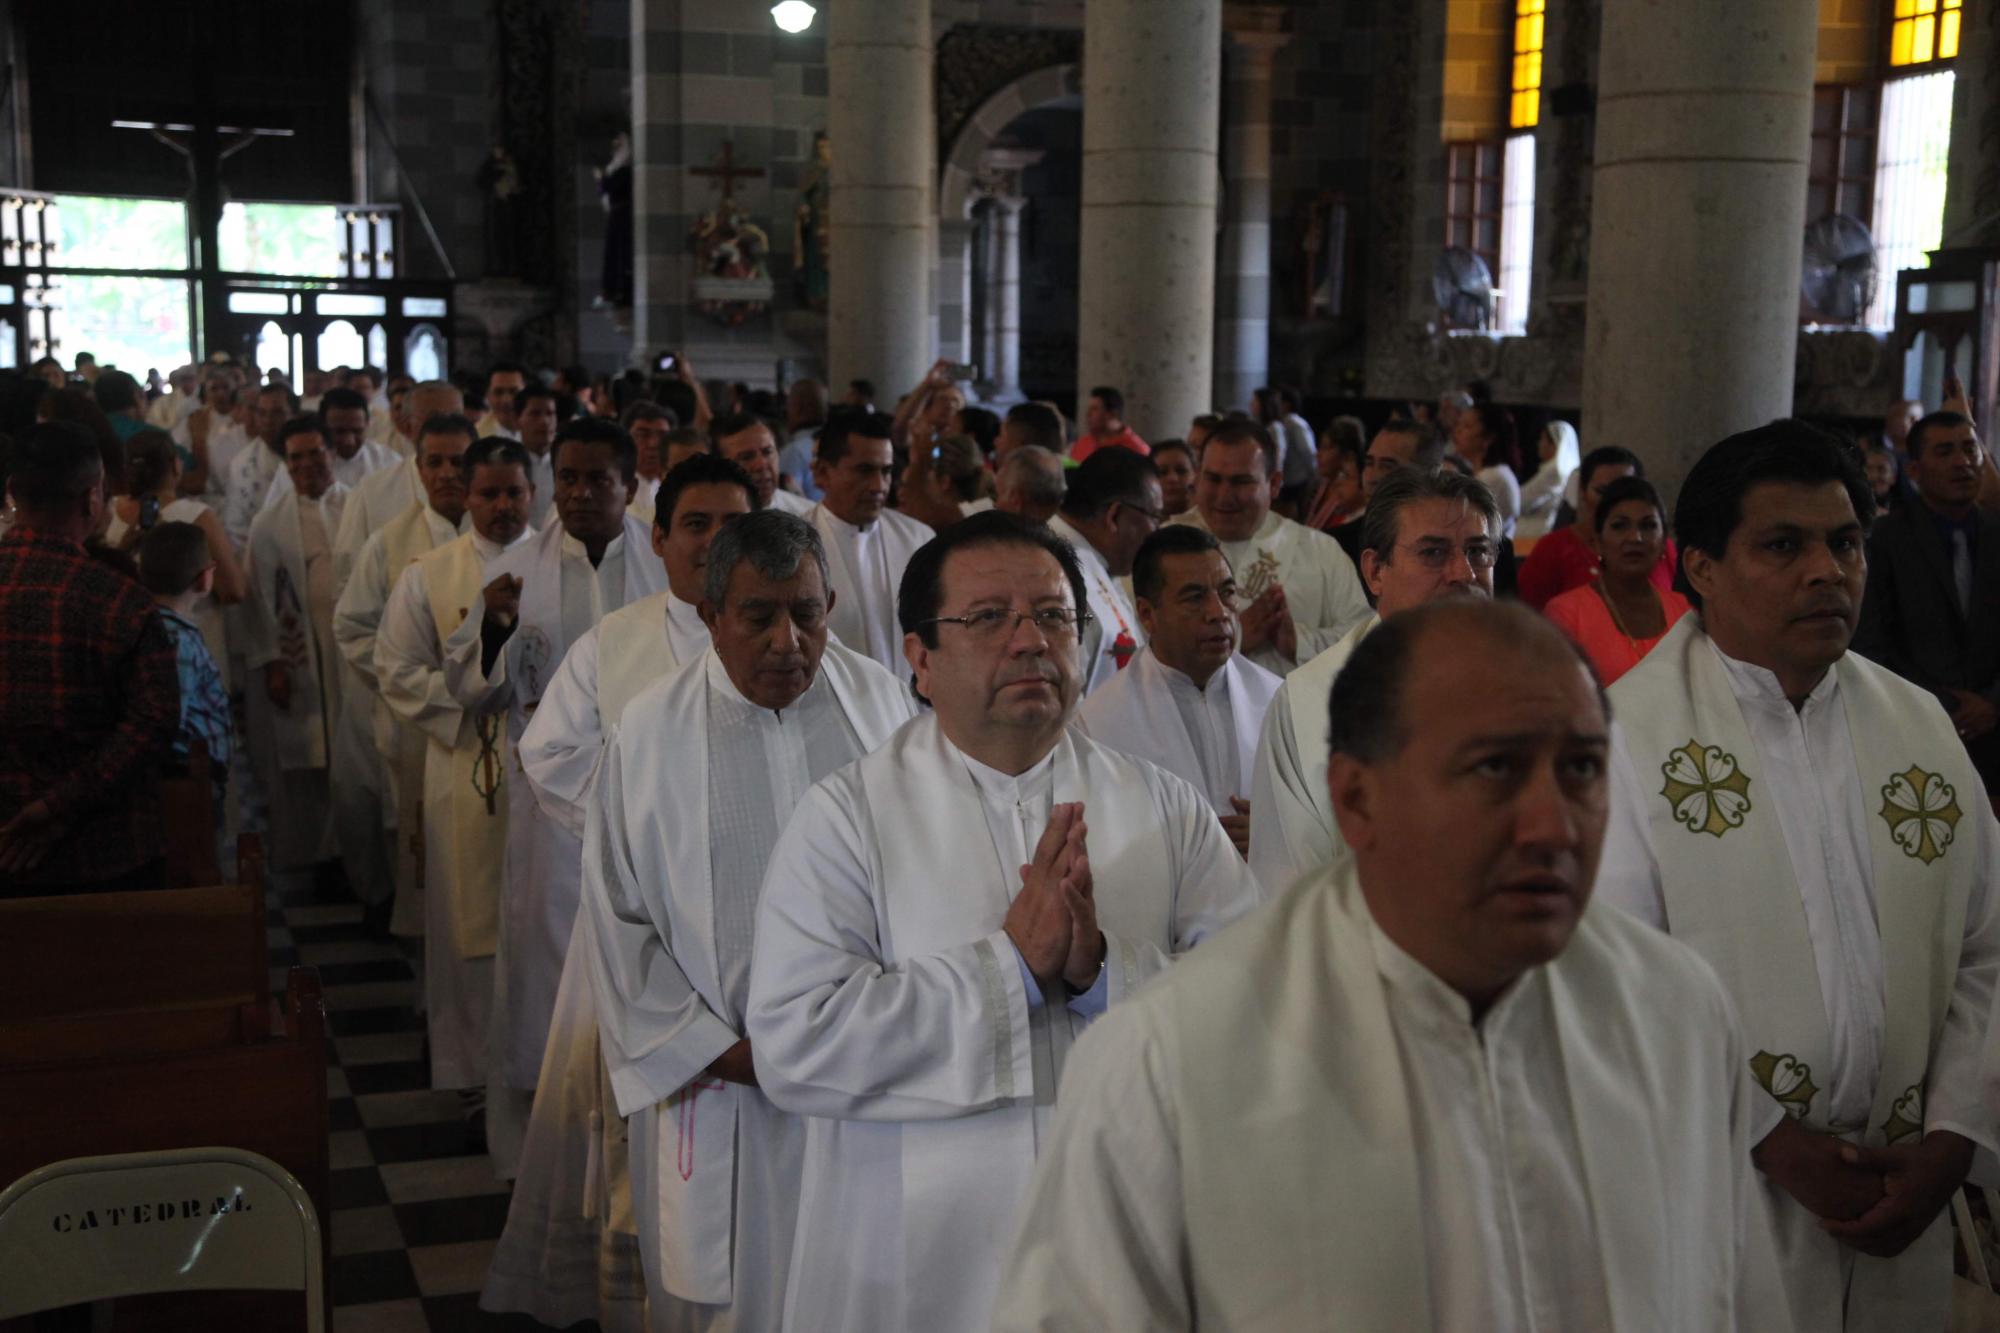 $!Piden unirse en oración por la salud del sacerdote Ezequiel, de Mazatlán